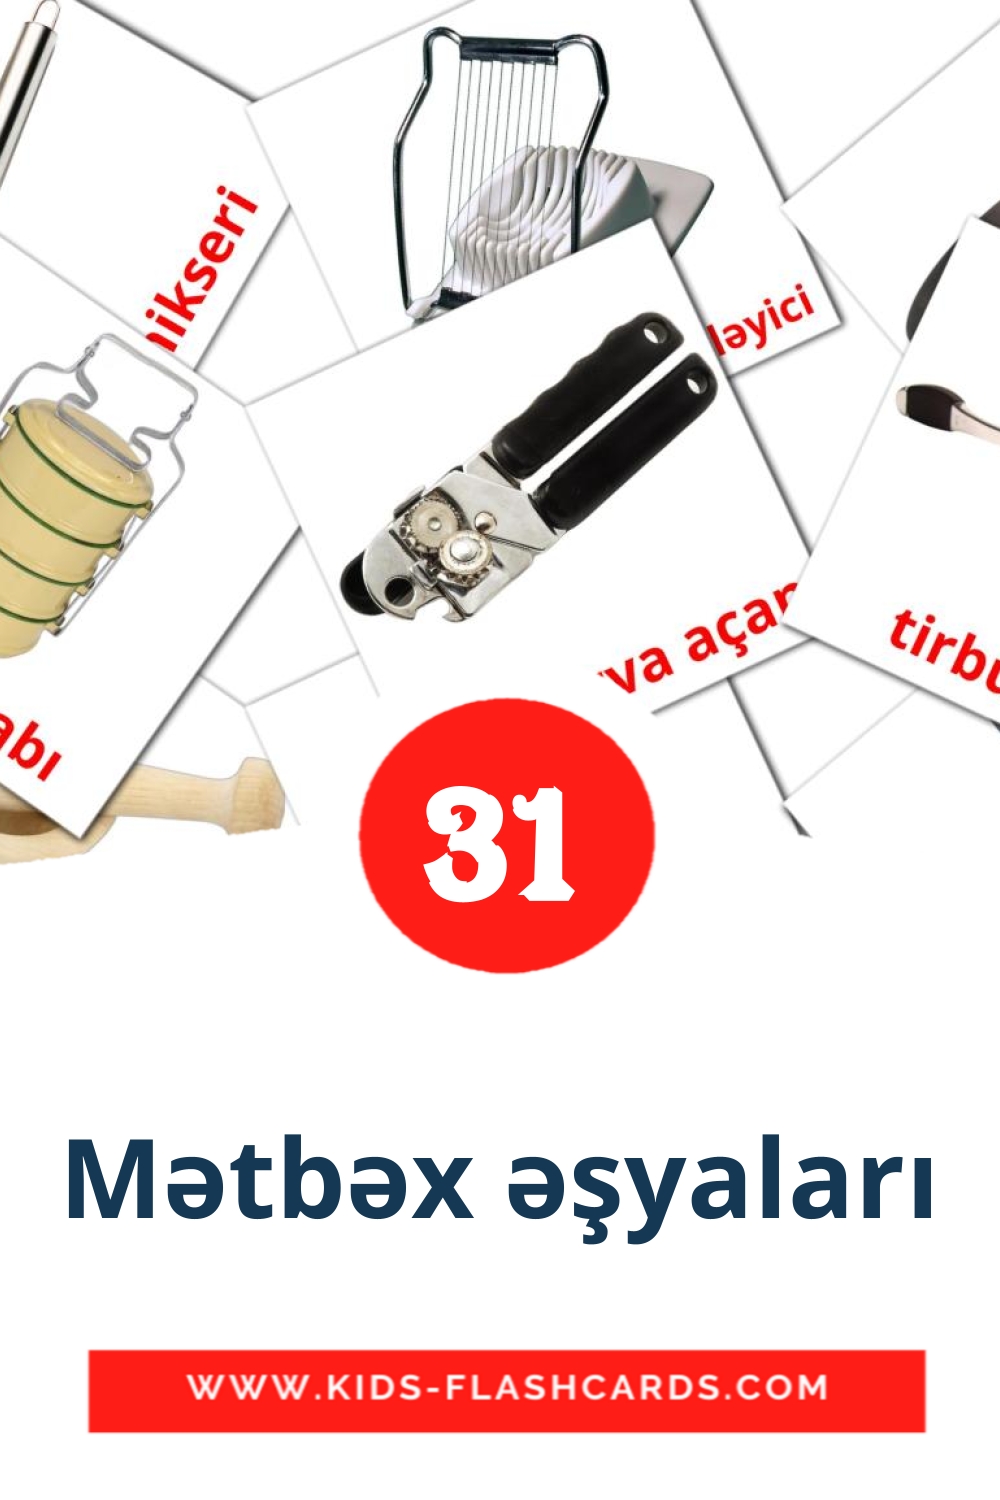 35 cartes illustrées de Mətbəx əşyaları pour la maternelle en azerbaïdjanais